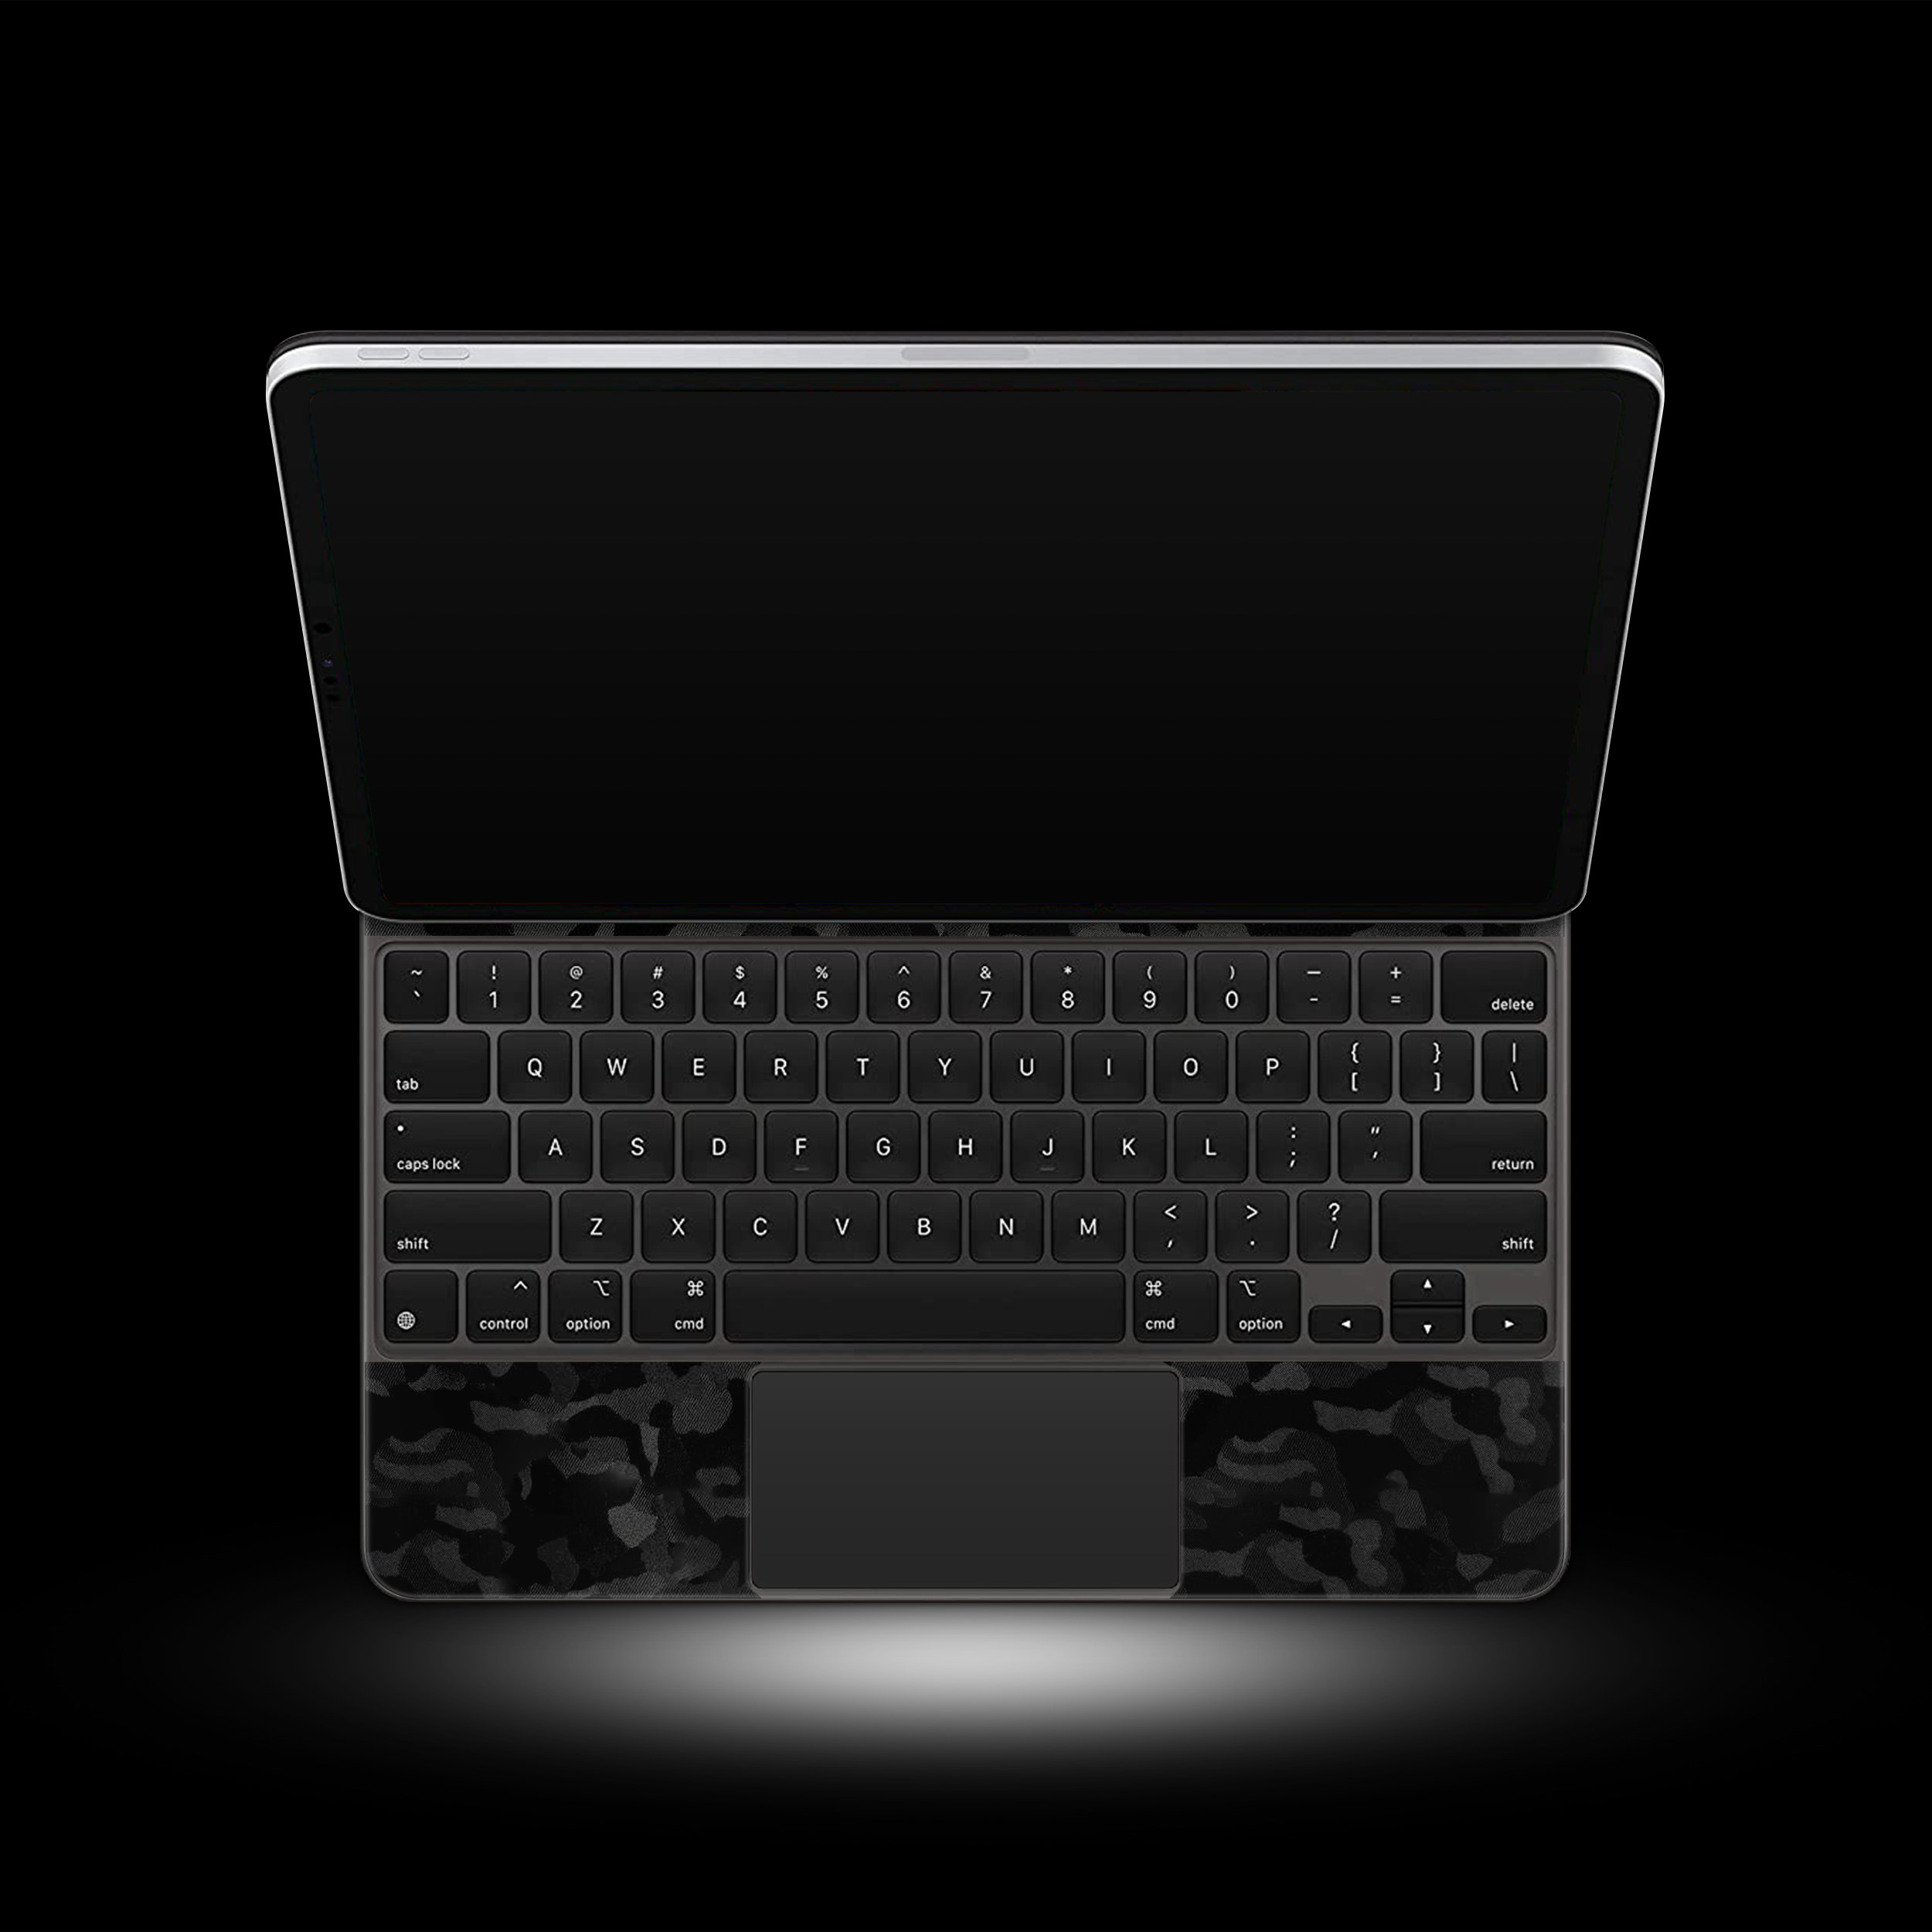 Black Camo (iPad Magic Keyboard Skin)